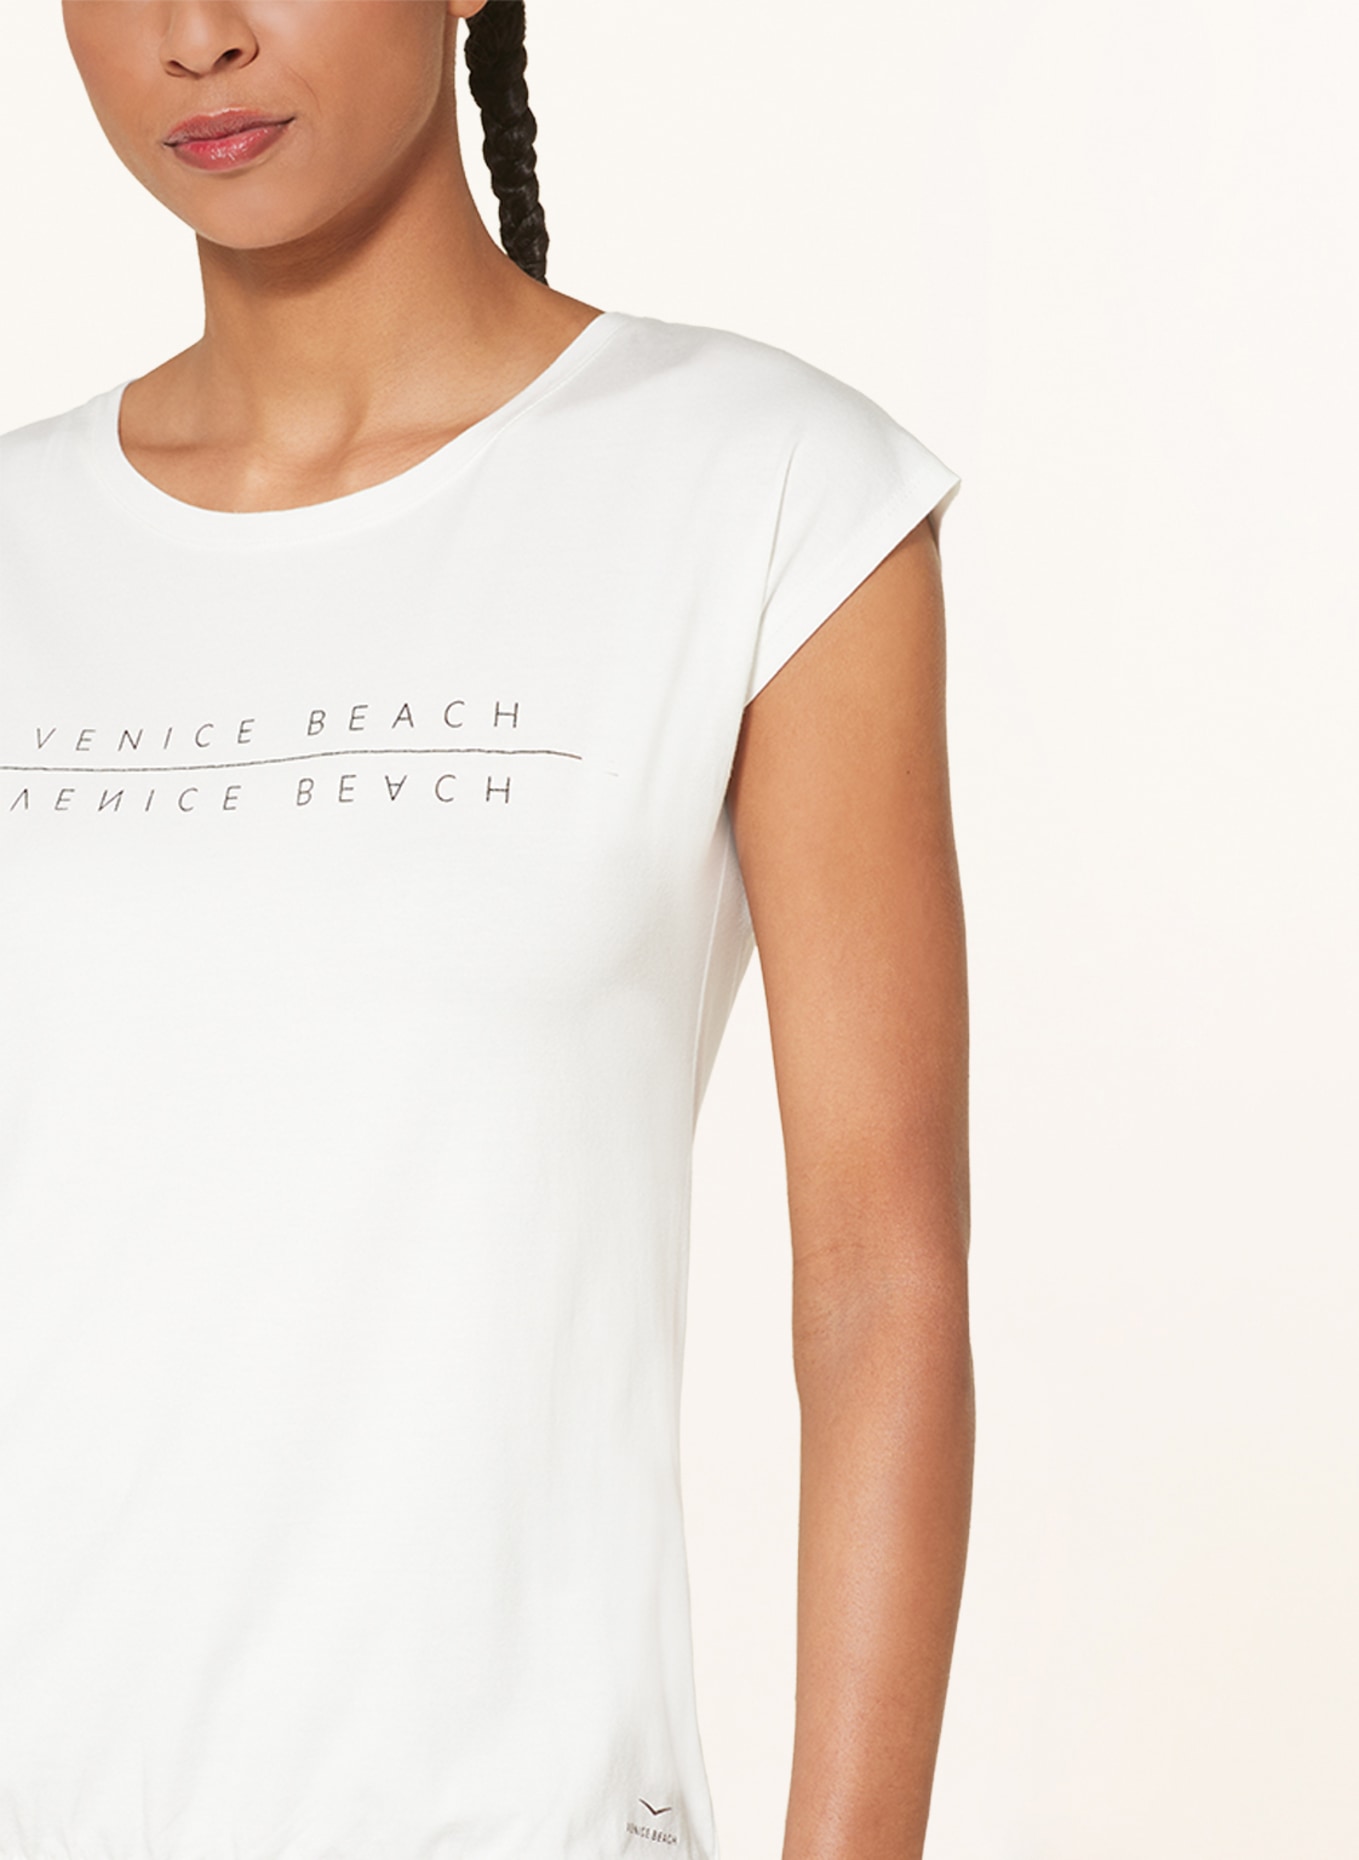 WONDER VB BEACH in T-Shirt weiss VENICE